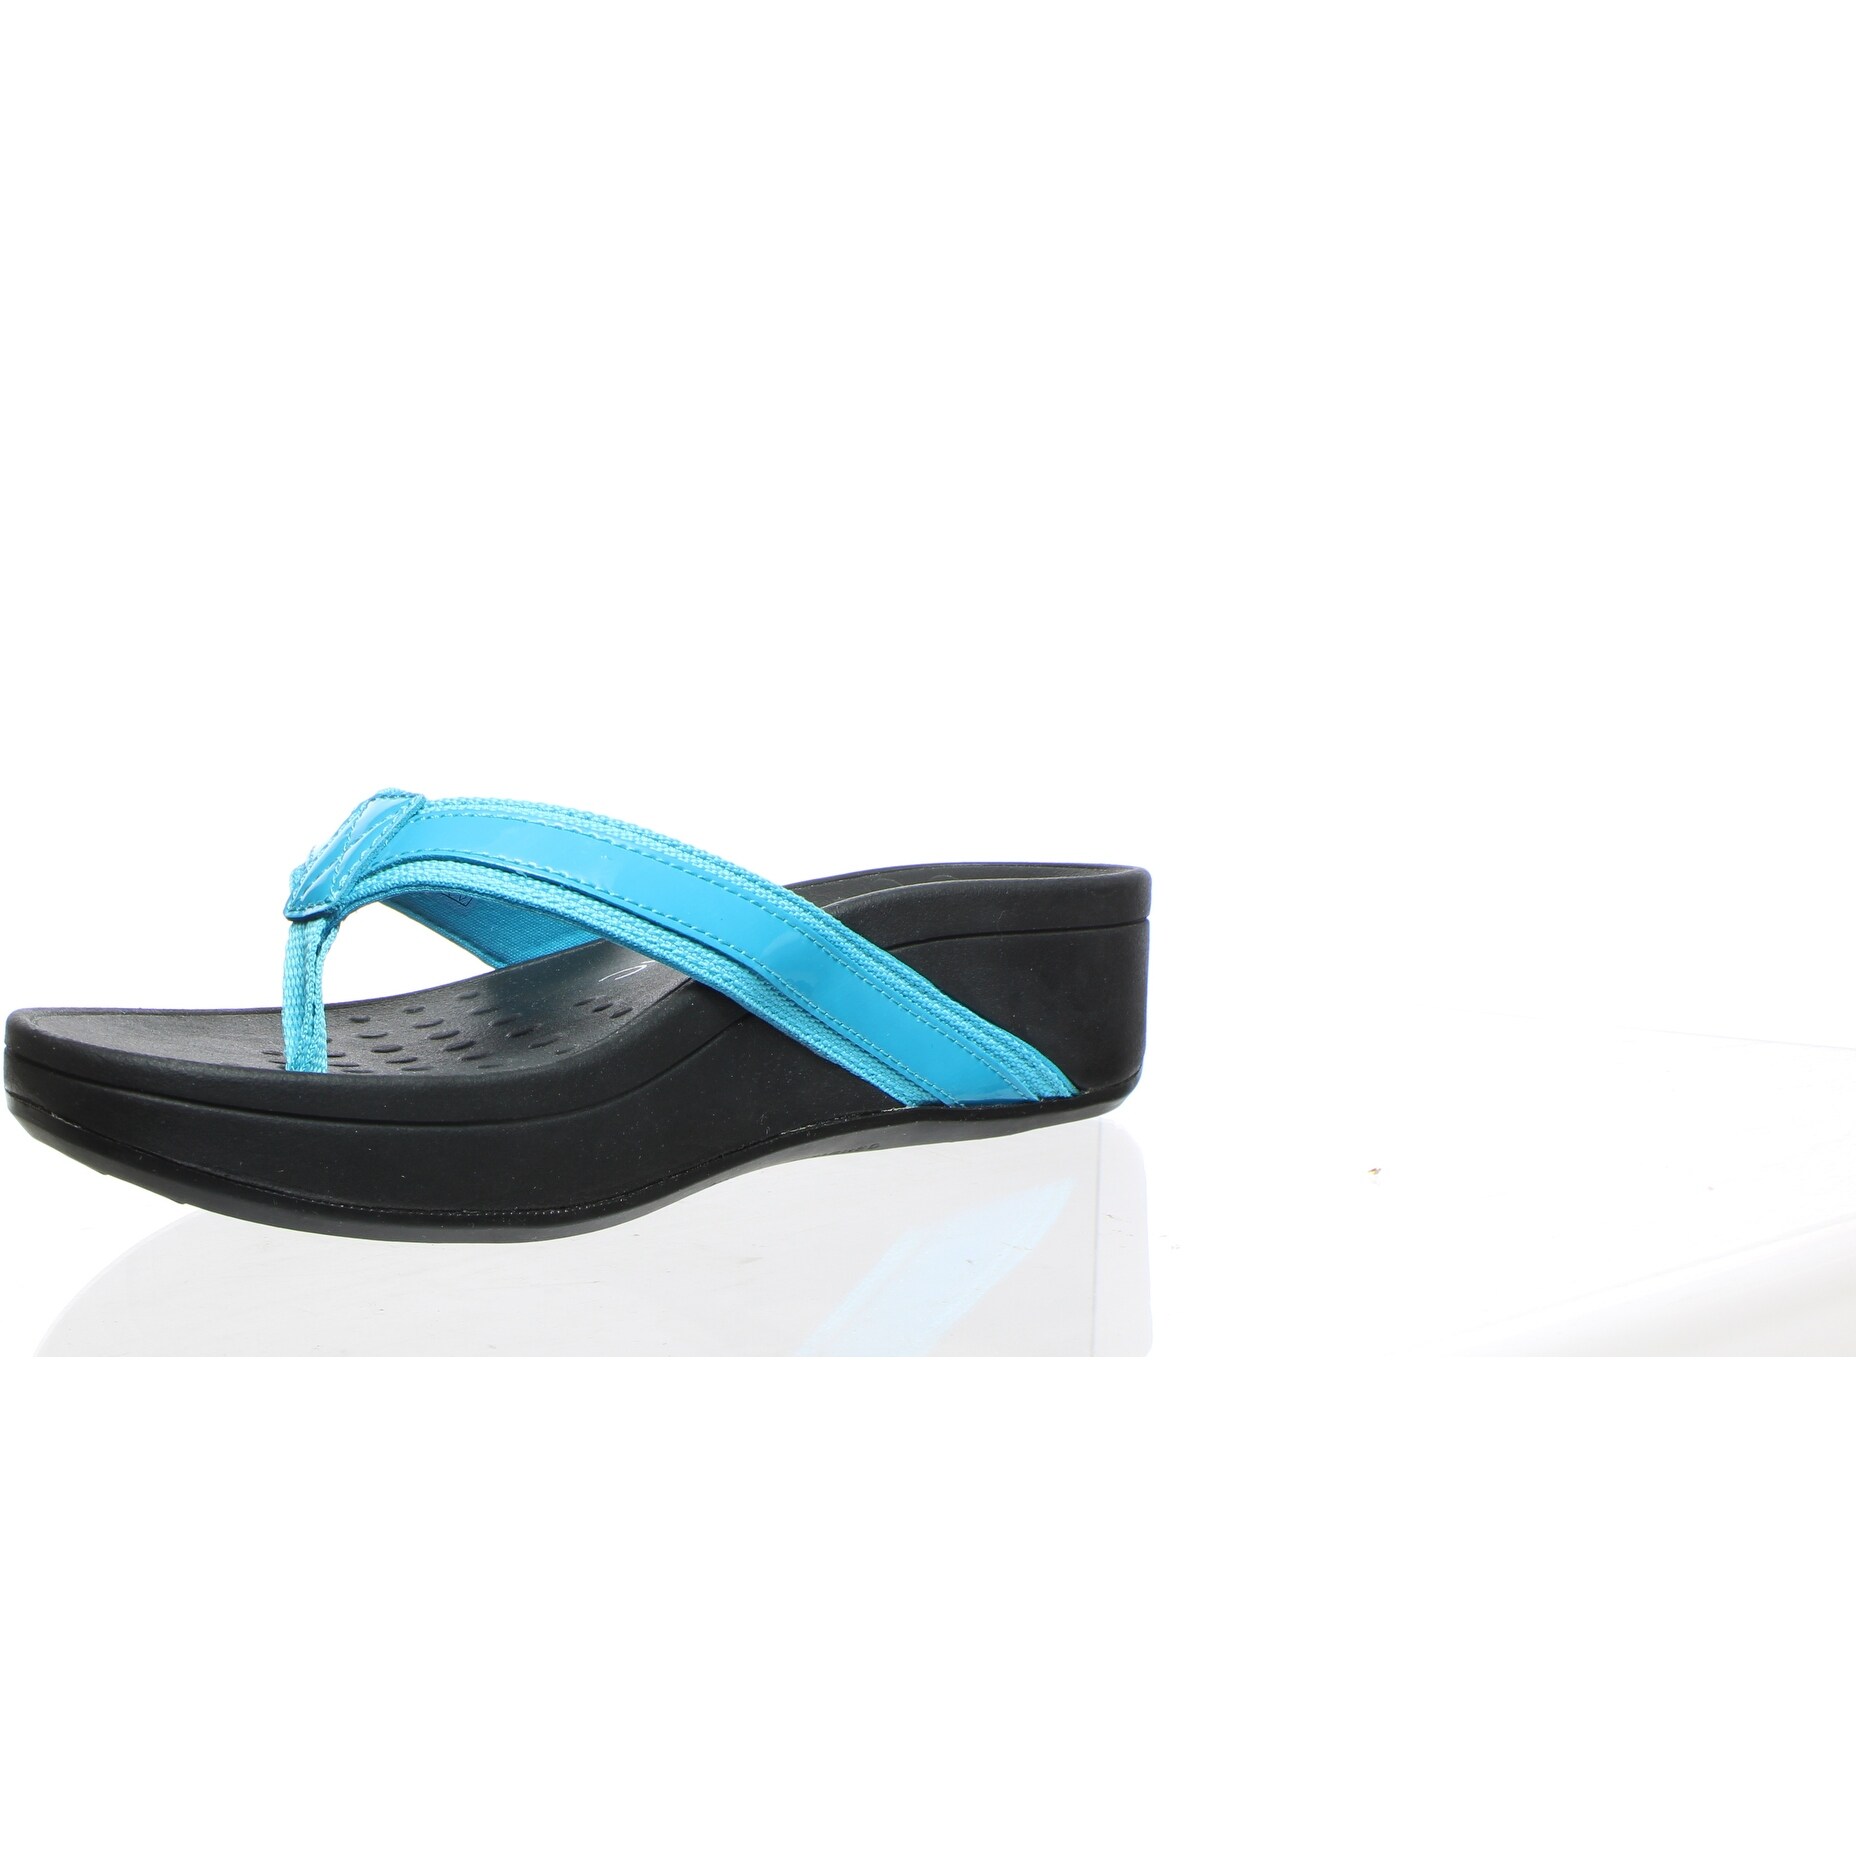 vionic sandals size 7